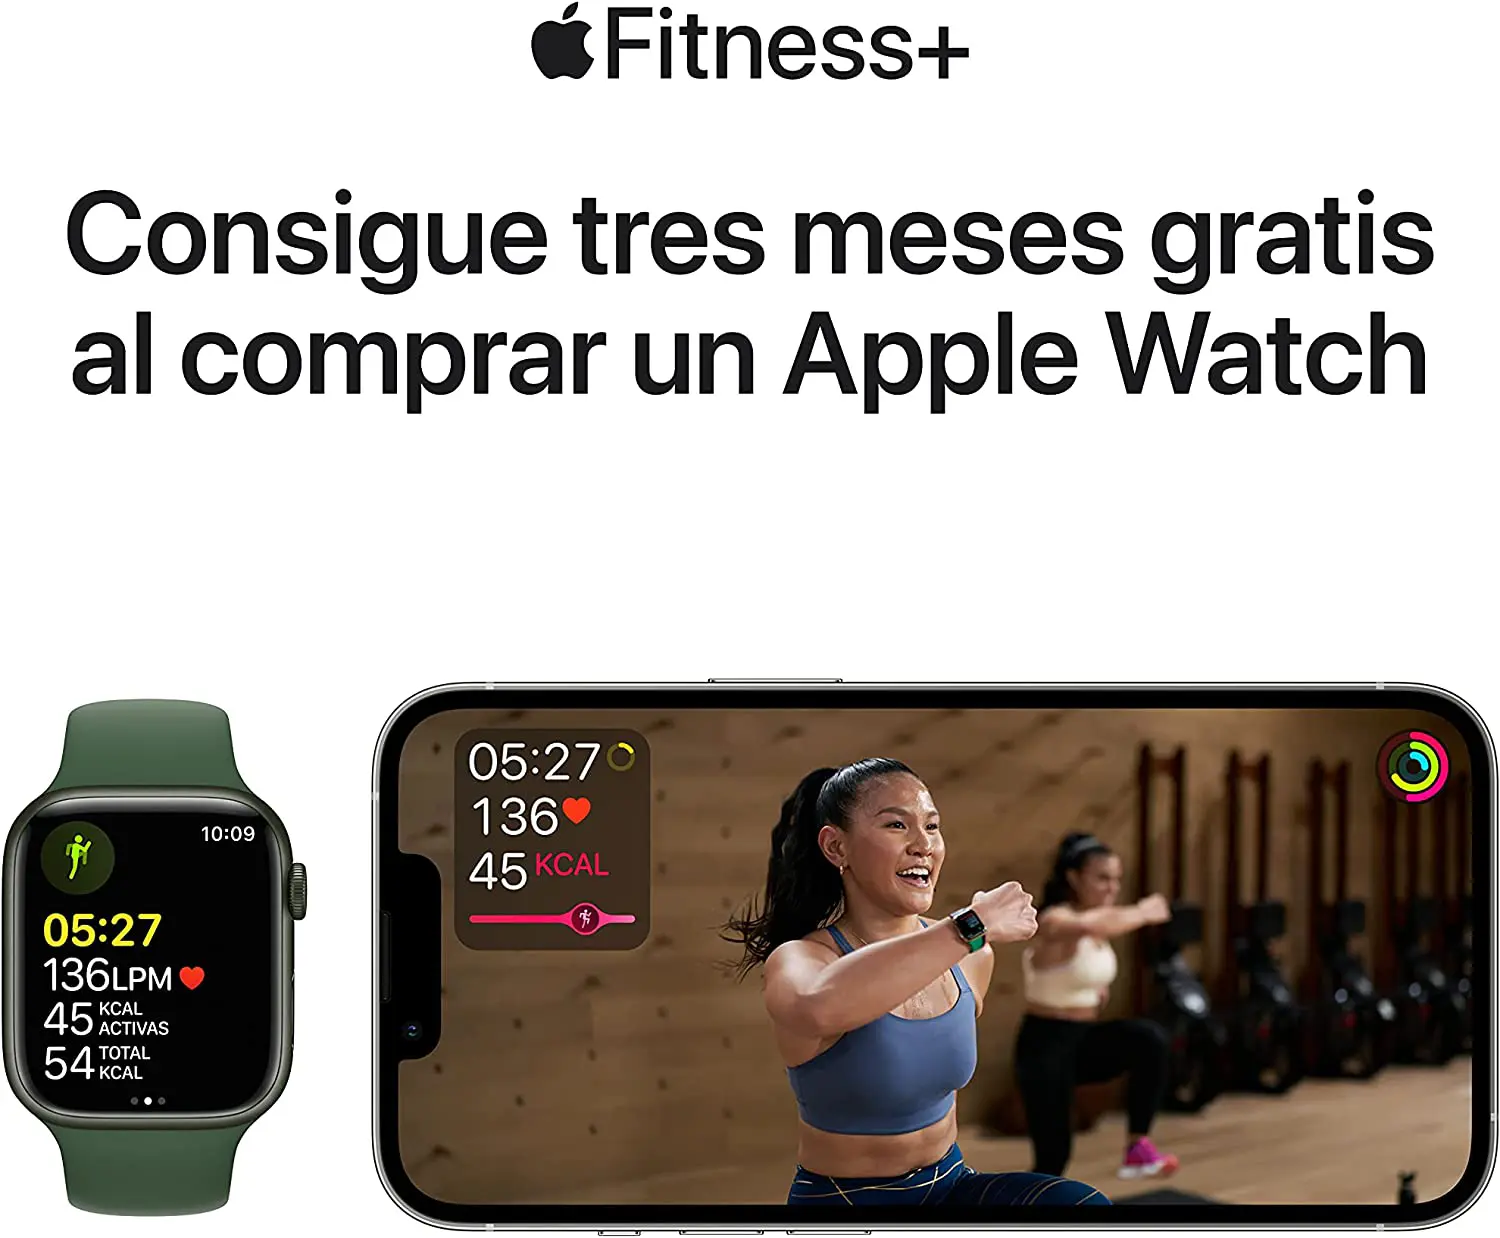 Apple Watch Series 7 (GPS + Cellular) - Caja de Aluminio en Color Medianoche de 41 mm - Correa Deportiva en Color Medianoche - Talla única - Oferta Fitness